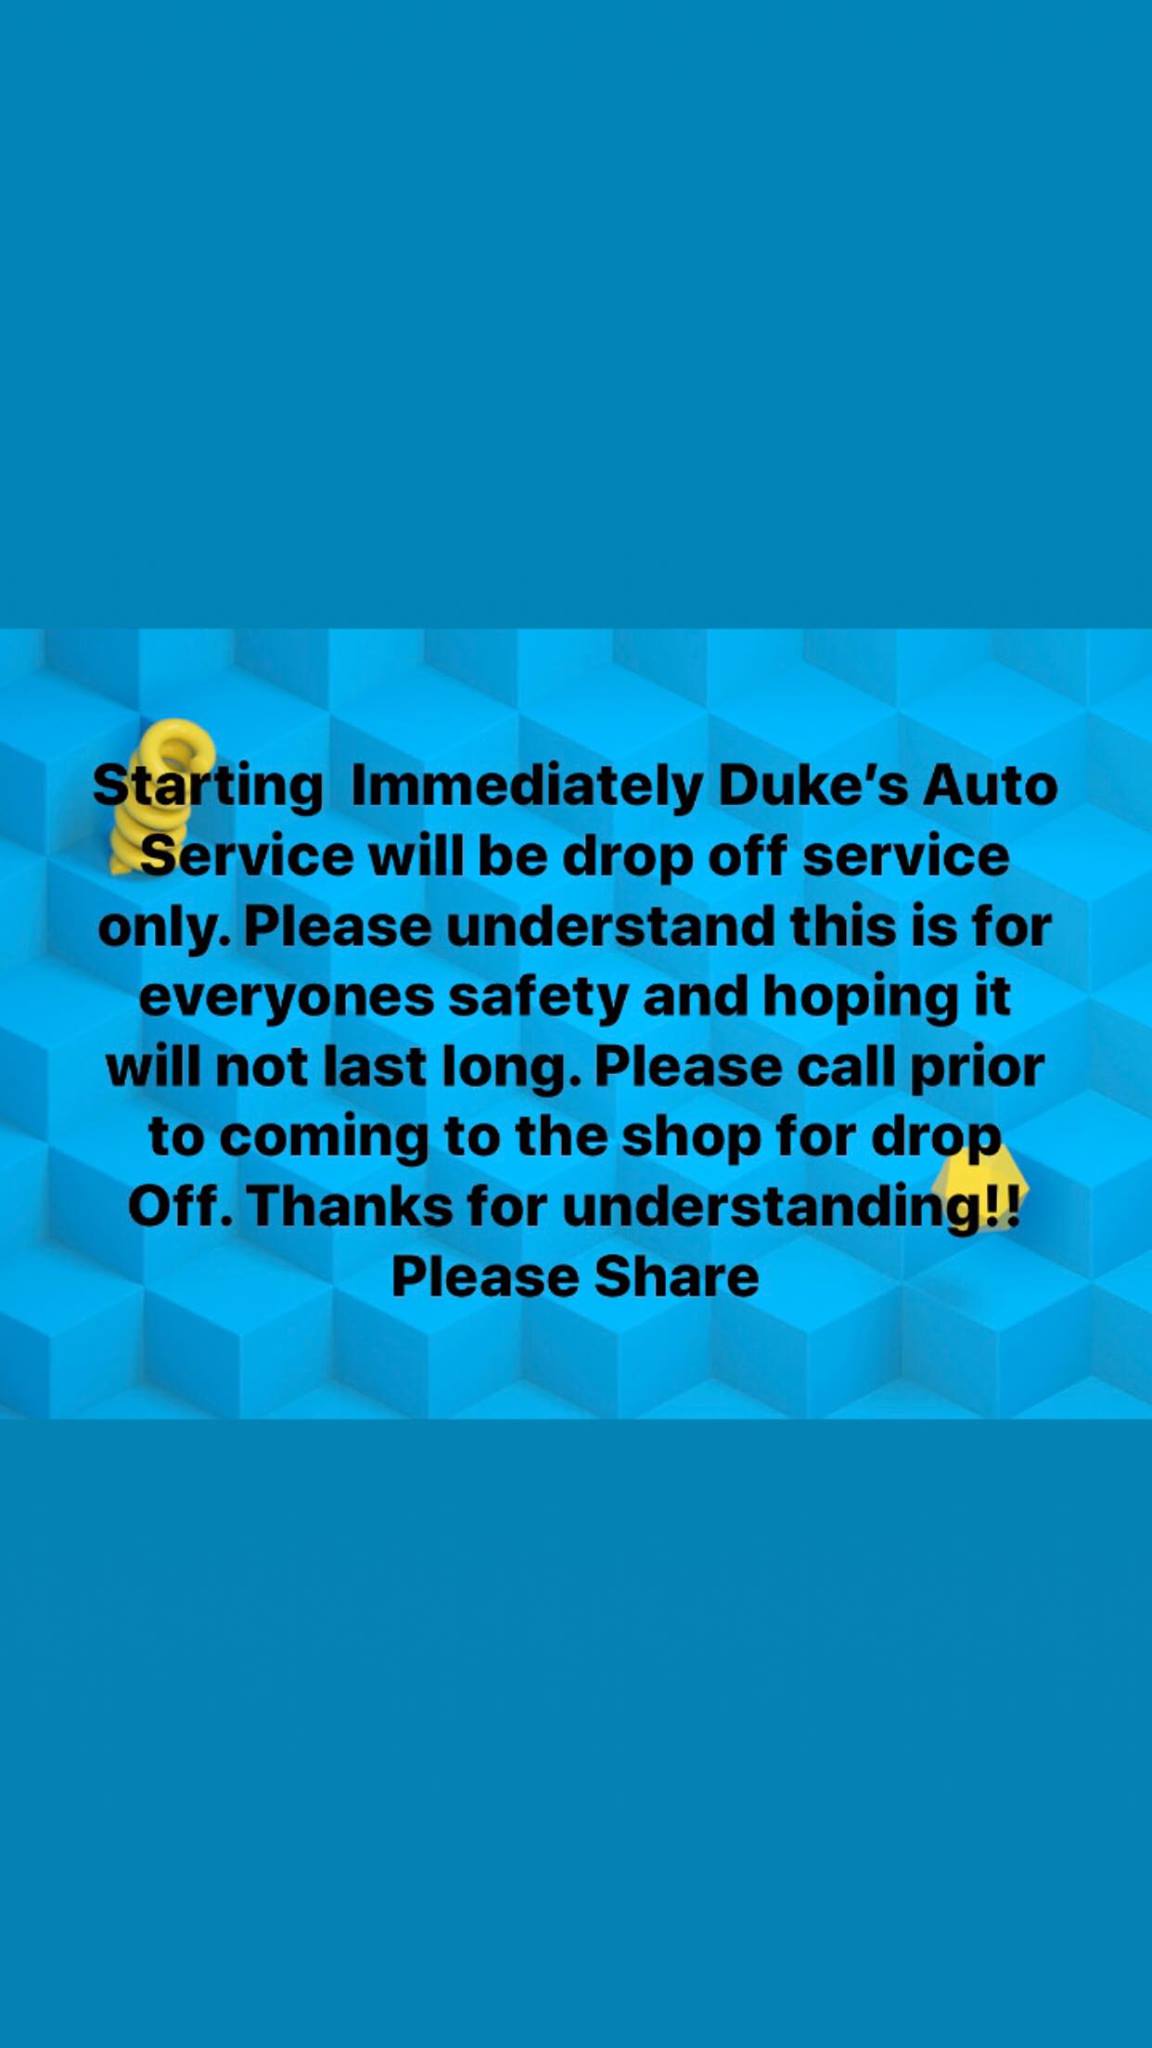 Dukes Auto Service